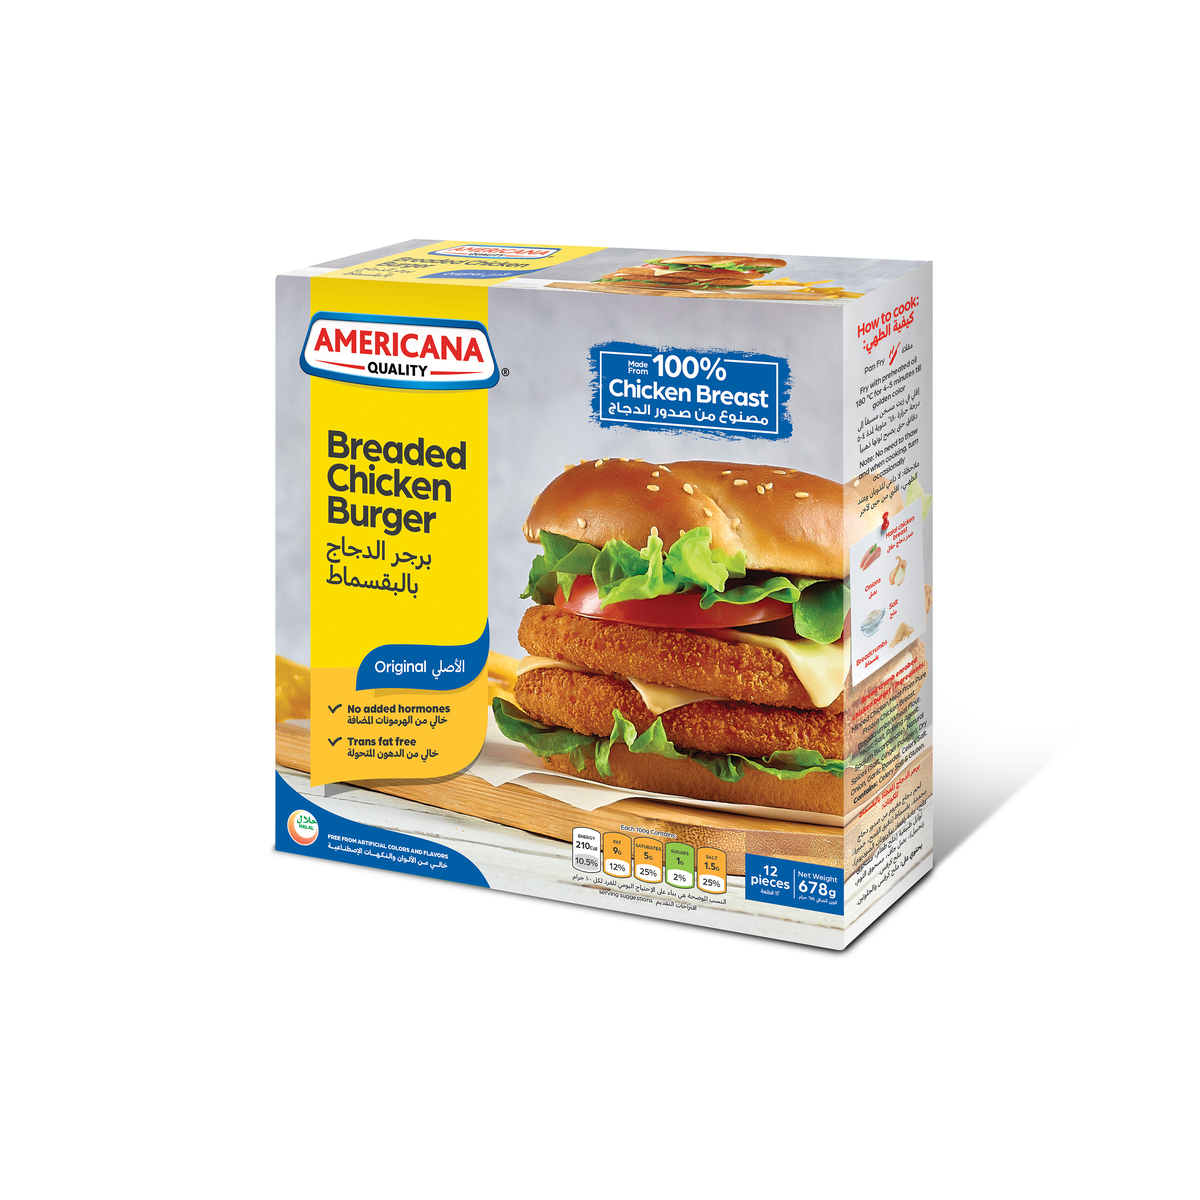 Americana Breaded Chicken Burger 12 pcs 678 g